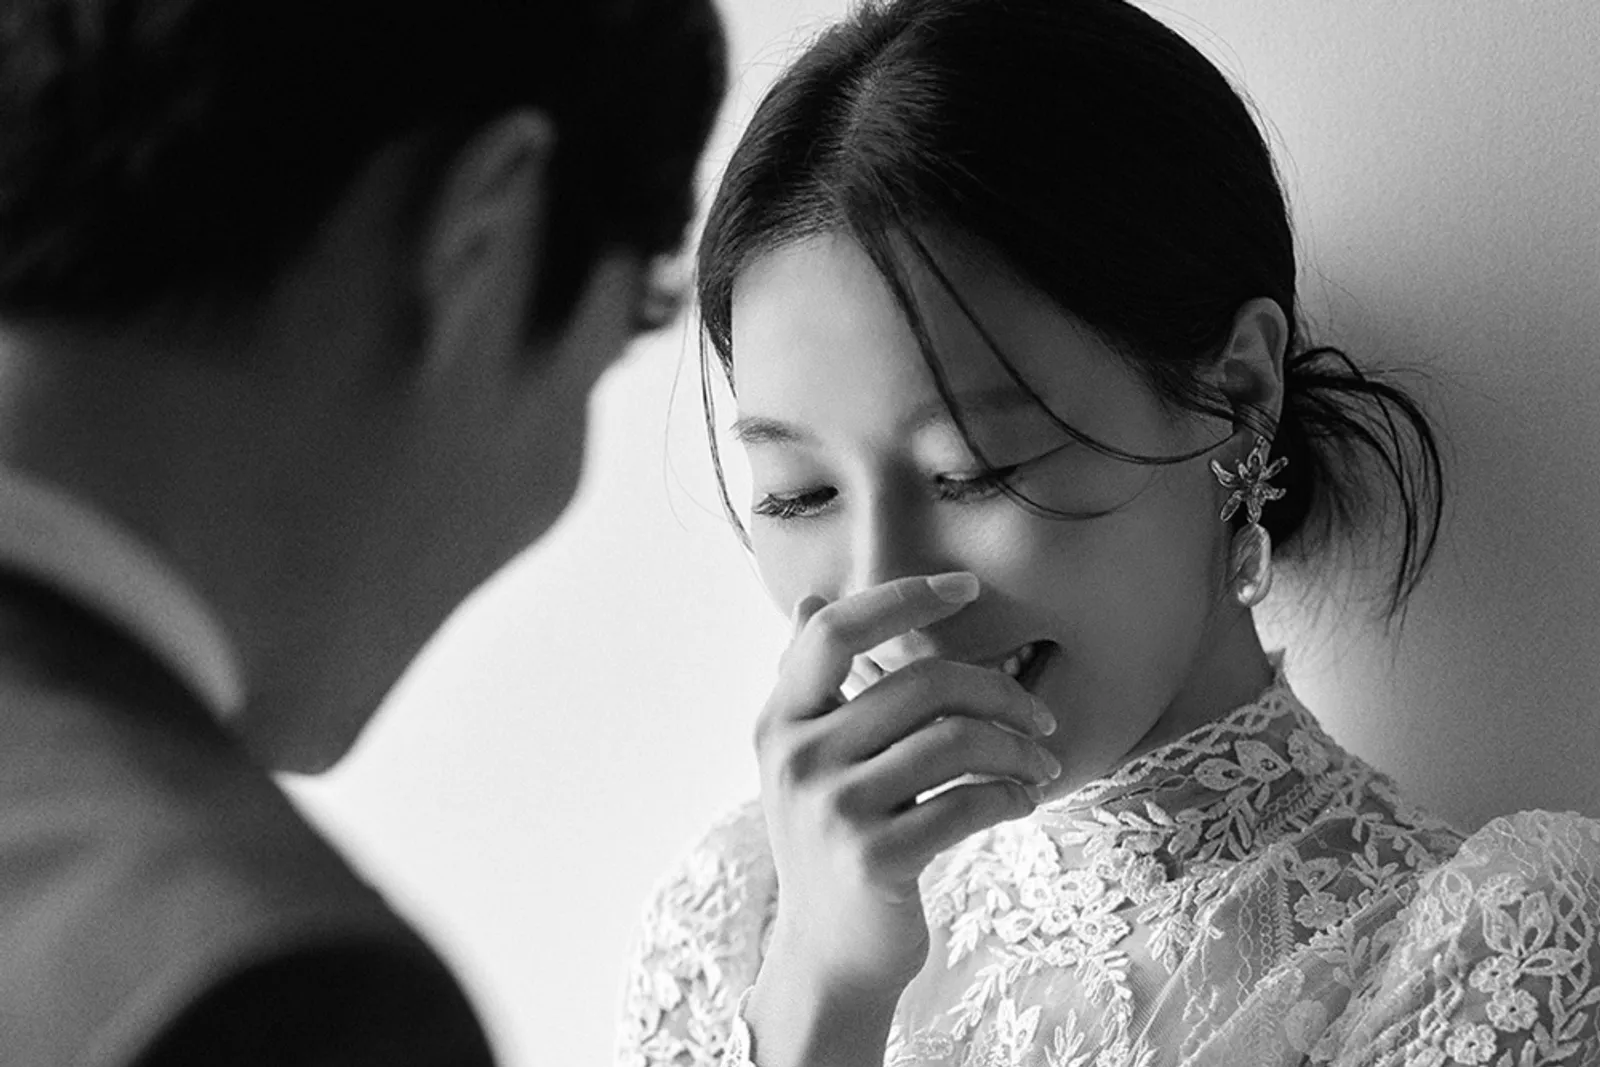 Akhirnya Sah! 5 Fakta Pernikahan Aktris 'Mr. Queen' Cha Chung Hwa